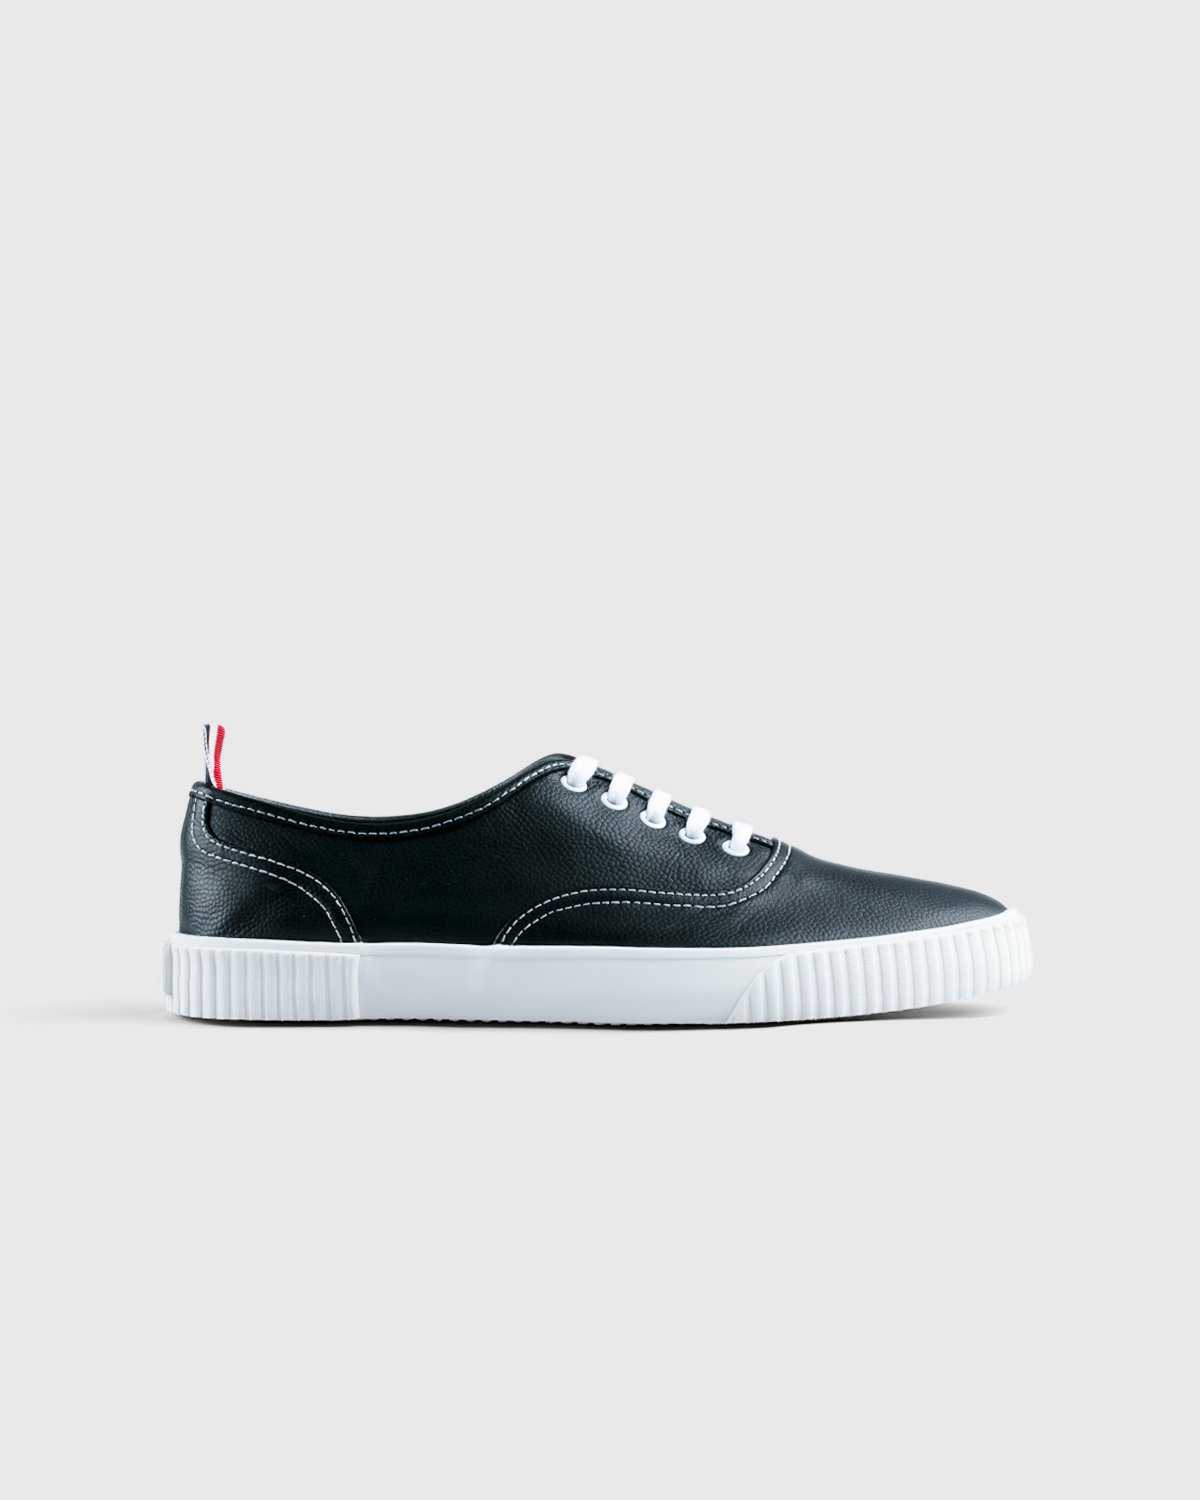 Thom Browne x Highsnobiety - Women's Heritage Sneaker Grey - Footwear - Grey - Image 1